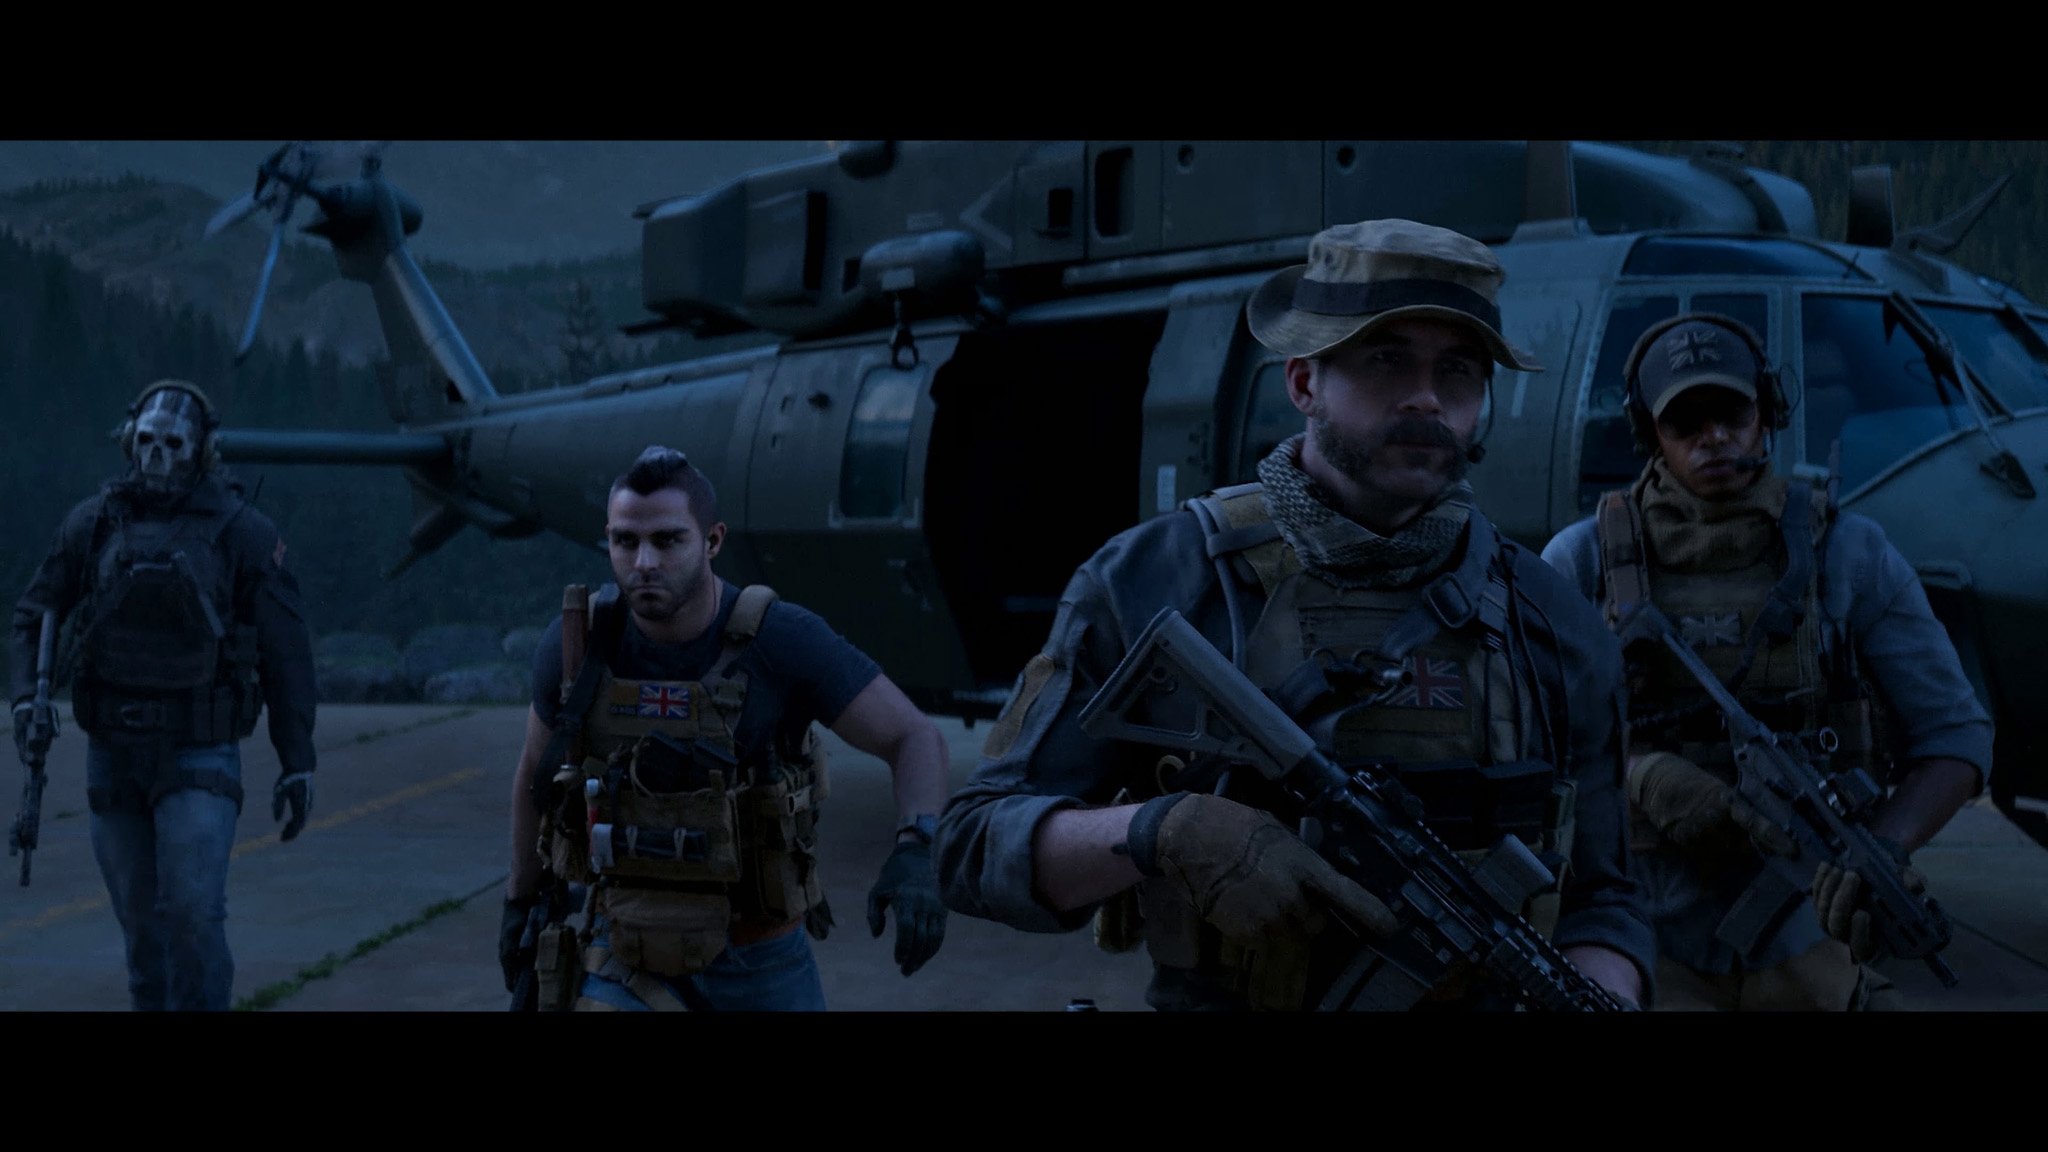 Đánh giá mục chơi đơn Call of Duty Modern Warfare III: Bán 70 USD cho cái này, Activision tài thật!